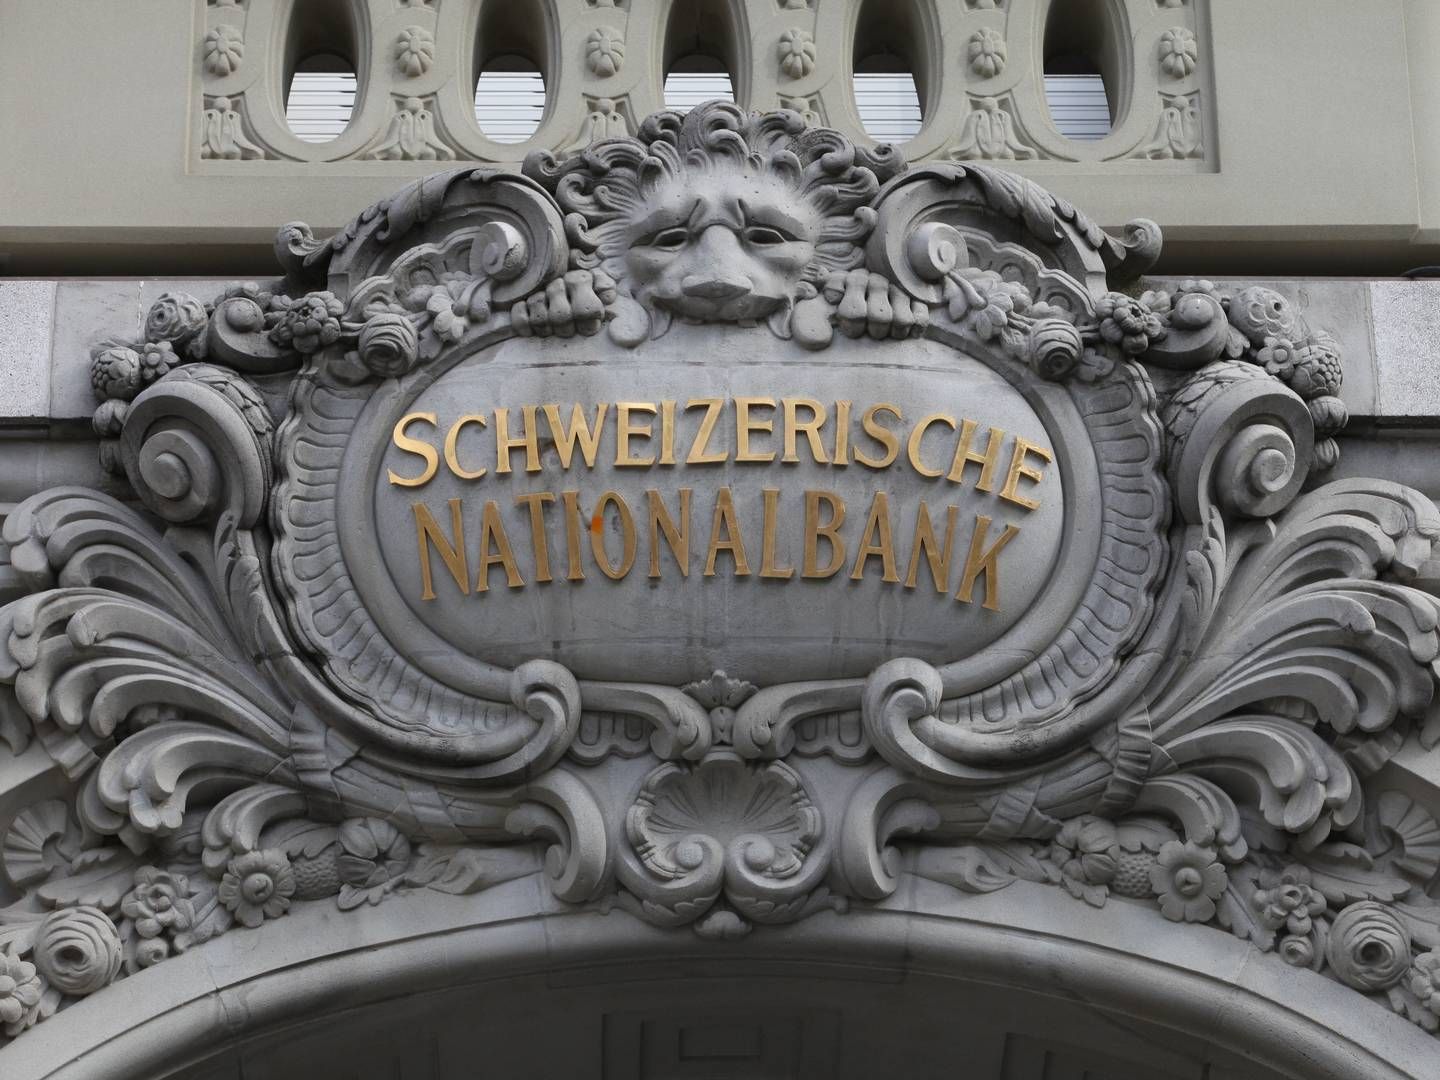 Will, dass die Inflation mittelfristig im Bereich der Preisstabilität bleibt: Die Schweizer Nationalbank. | Foto: picture alliance / dts-Agentur | -